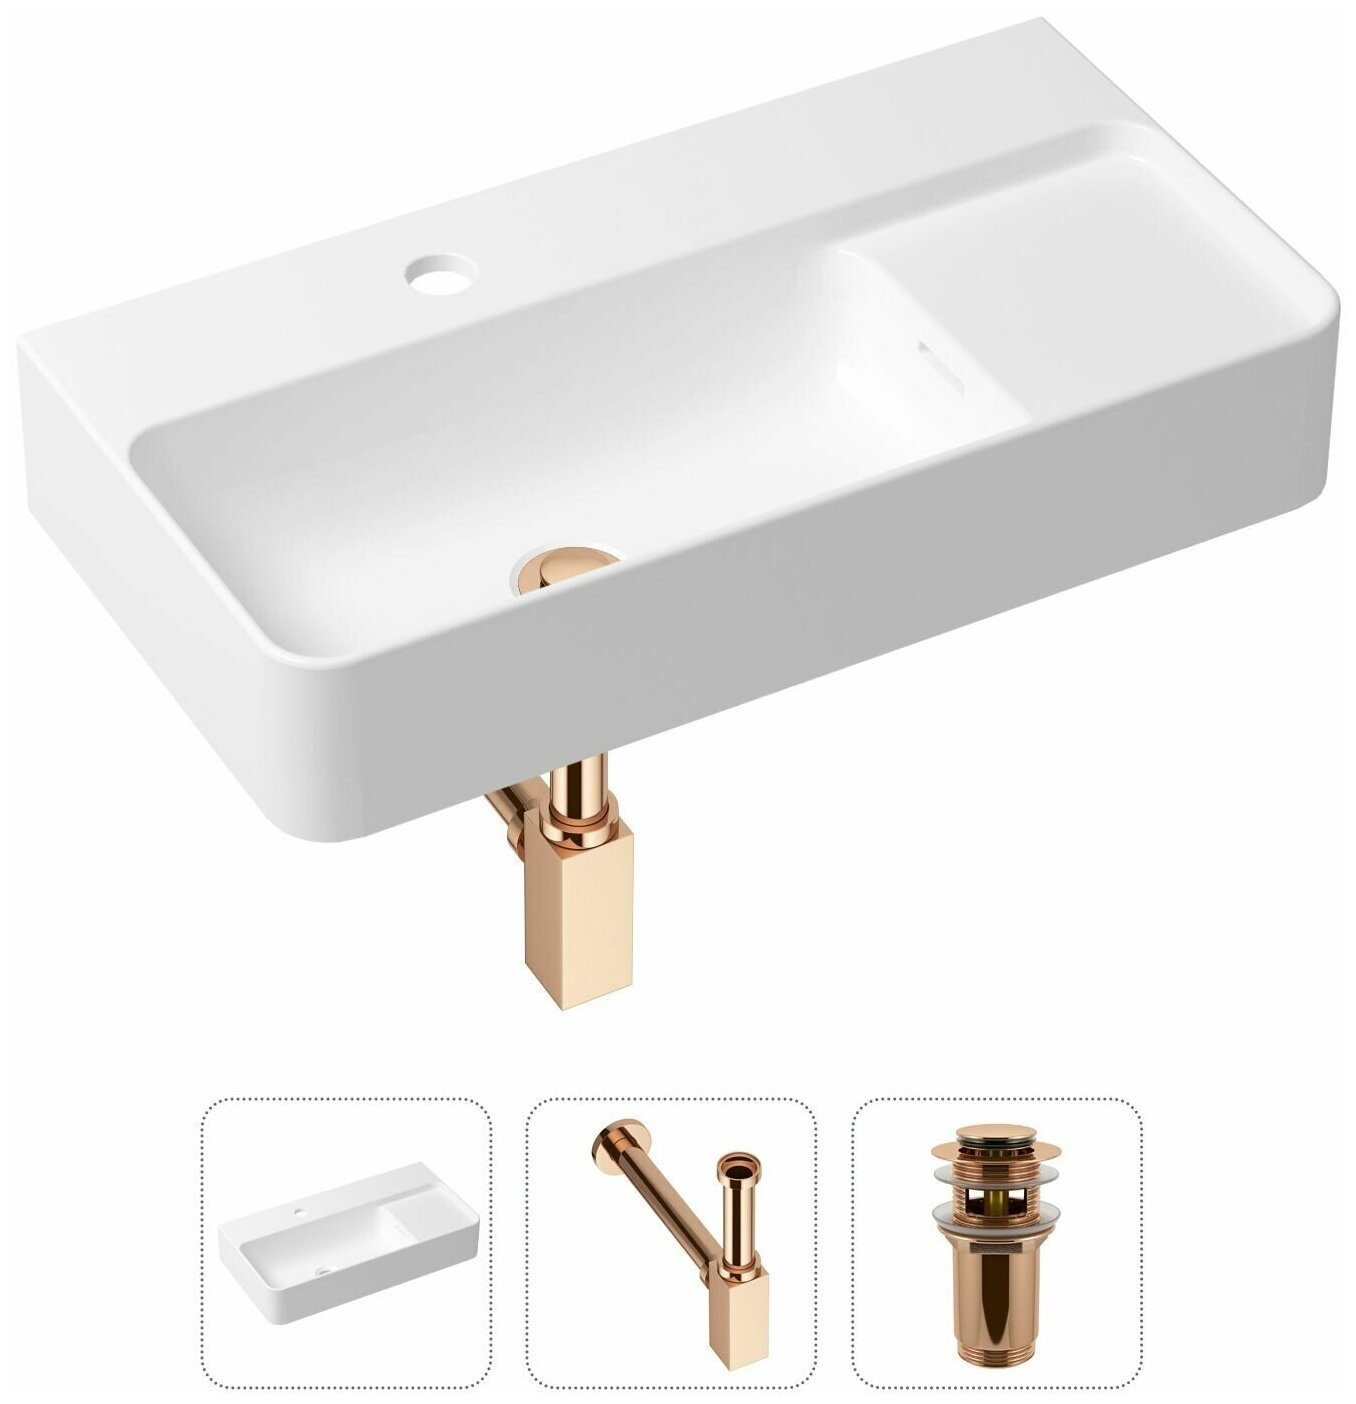 Комплект 3 в 1 Lavinia Boho Bathroom Sink 21520508: накладная фарфоровая раковина 60 см, металлический сифон, донный клапан